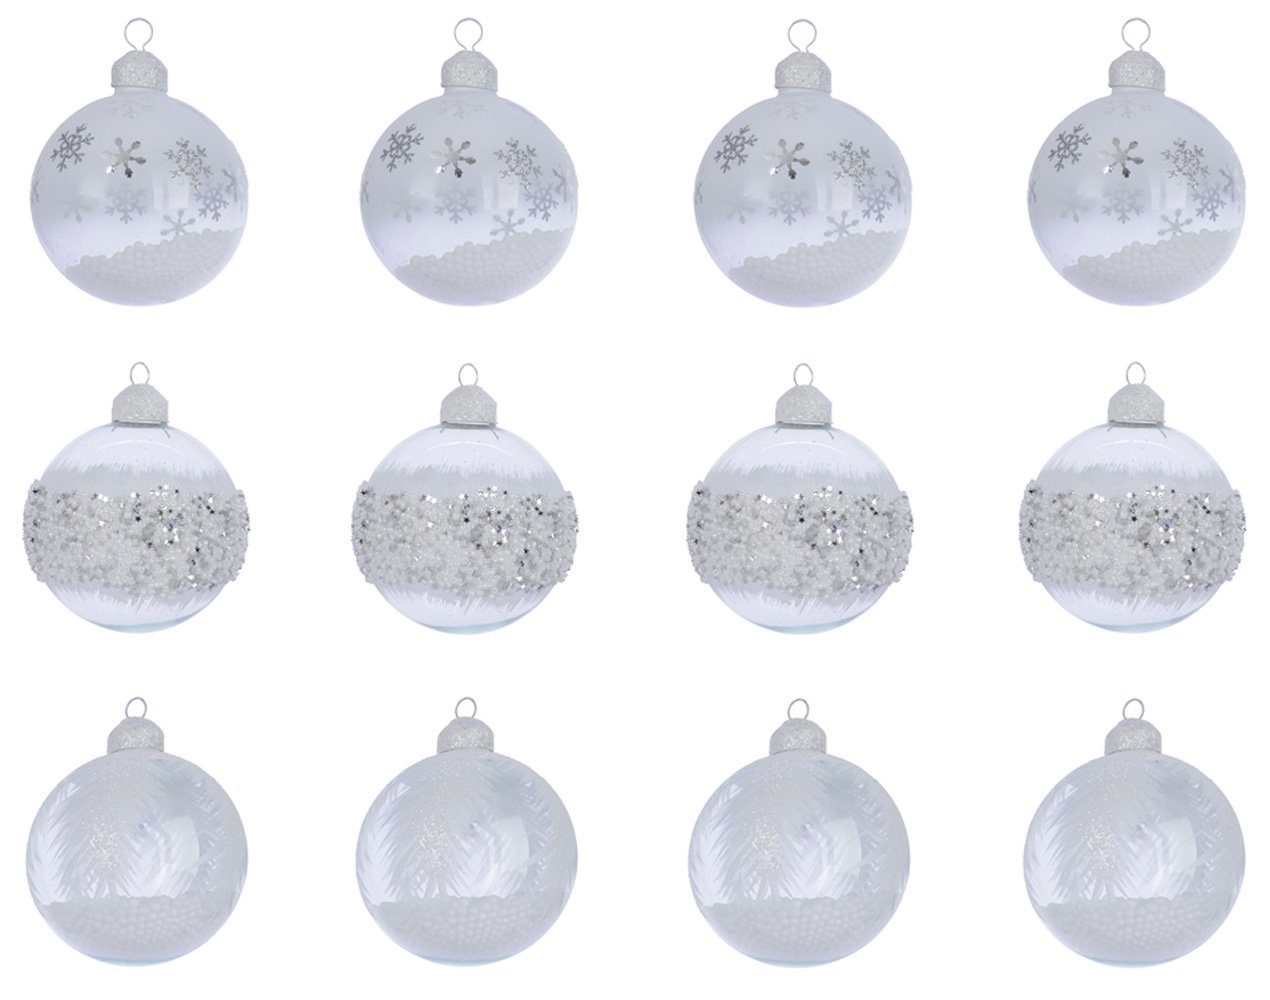 Decoris season decorations Weihnachtsbaumkugel, Weihnachtskugeln Glas mit Motiv gefüllt 8cm klar / weiß, 12er Set